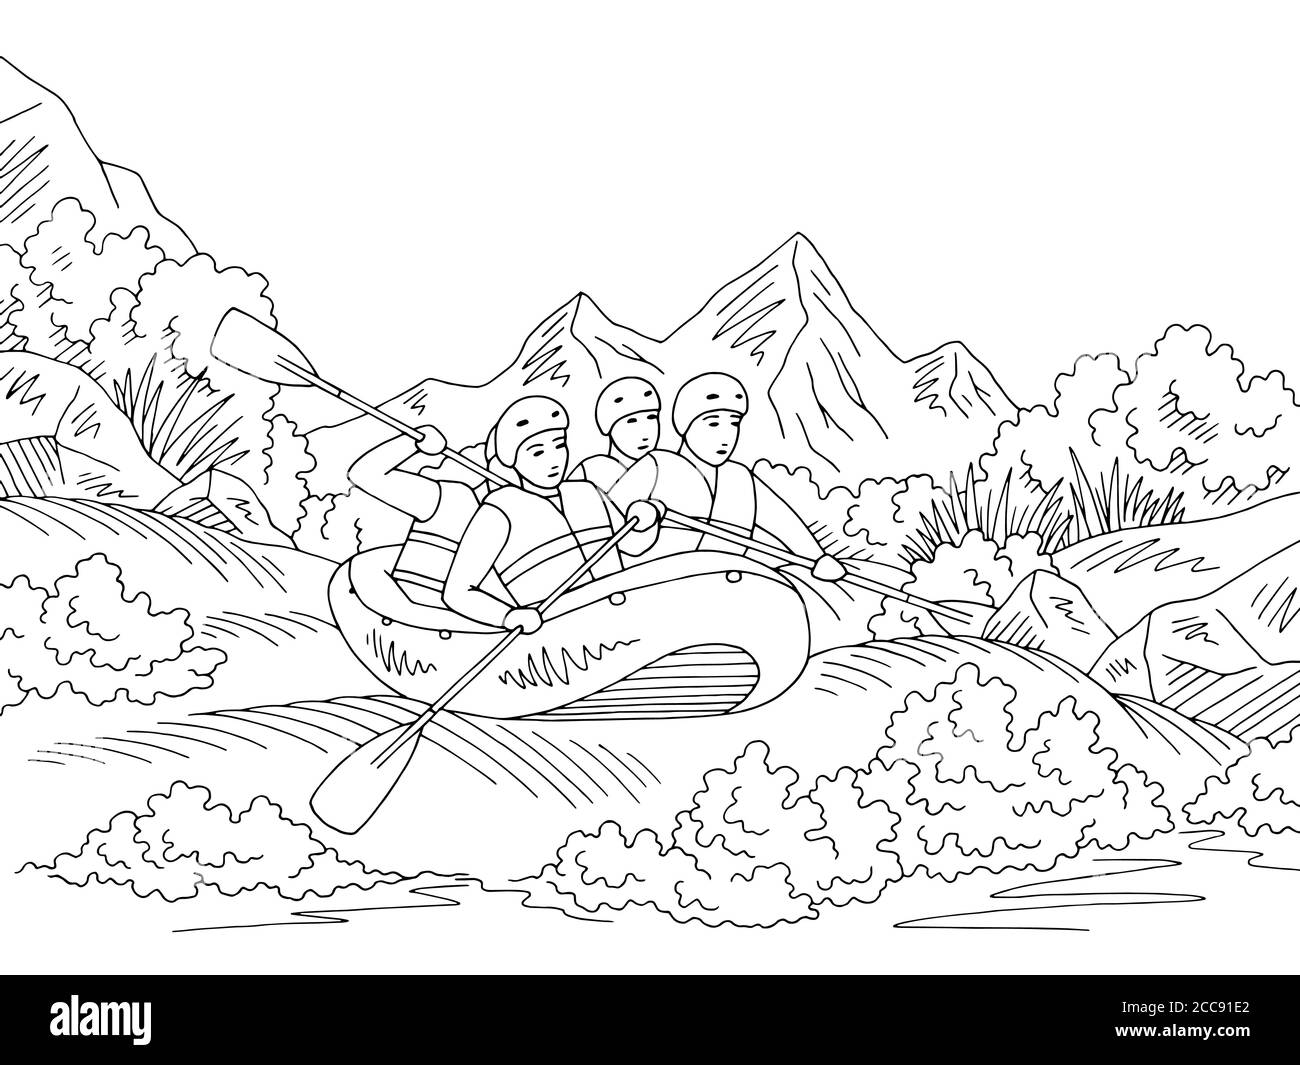 Rafting Boot Reise Grafik schwarz weiß Landschaft Skizze Illustration Vektor Stock Vektor